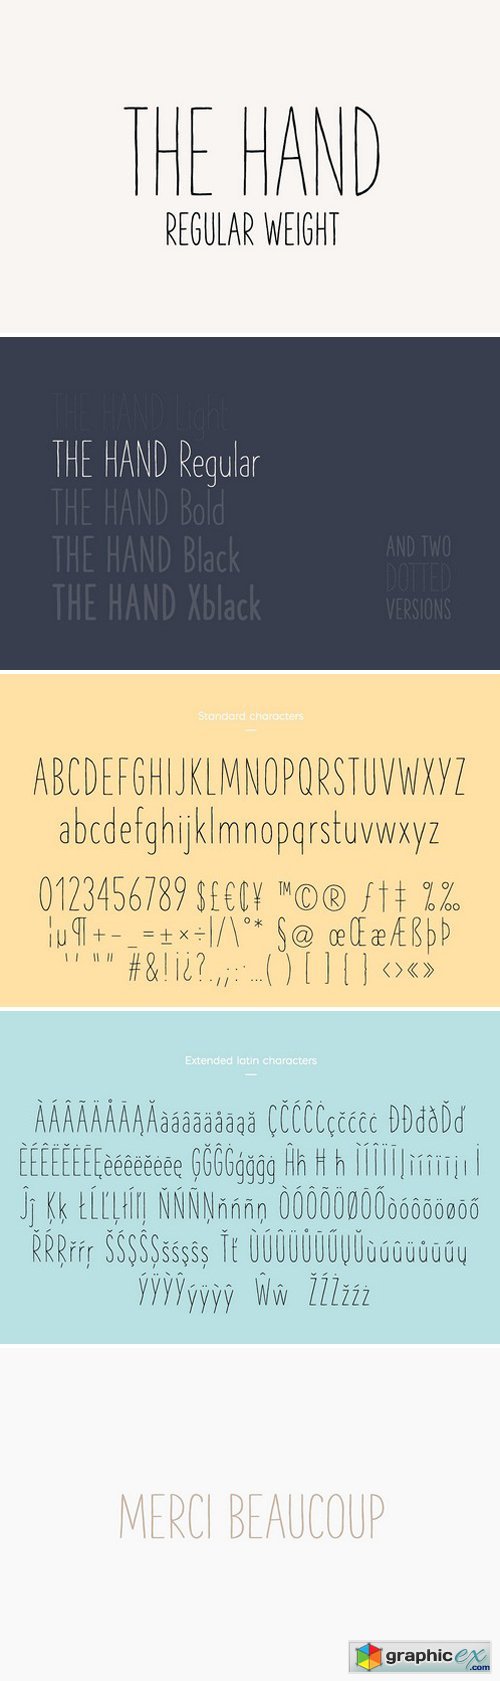 The Hand Font - Regular